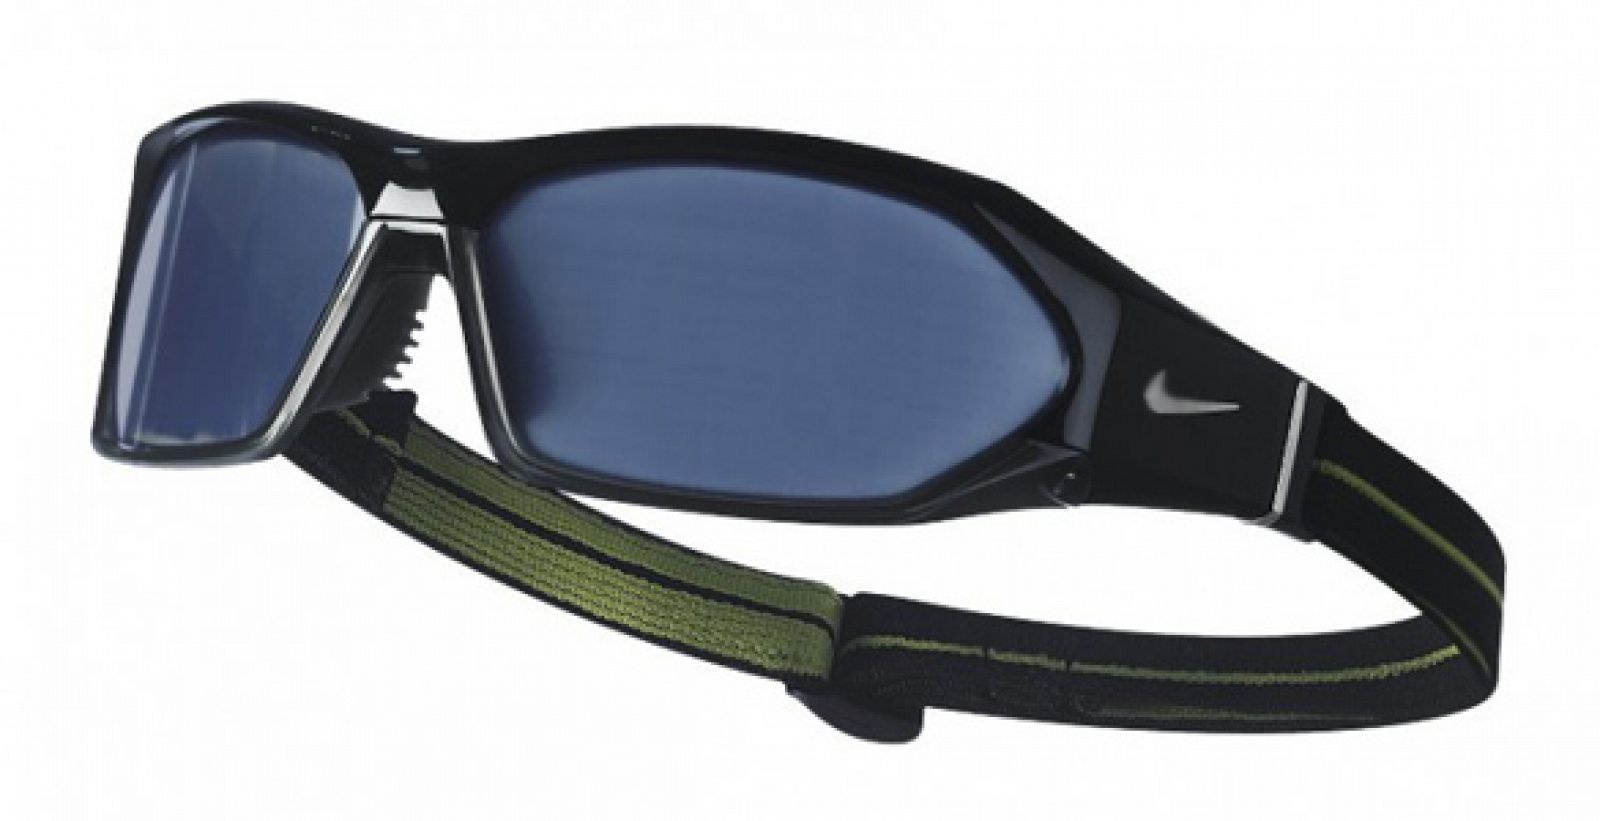 El modelo SPARQ Vapor Strobe Eyewear potencia la memoria fotográfica y anticipa la dirección de los objetos y su trayectoria